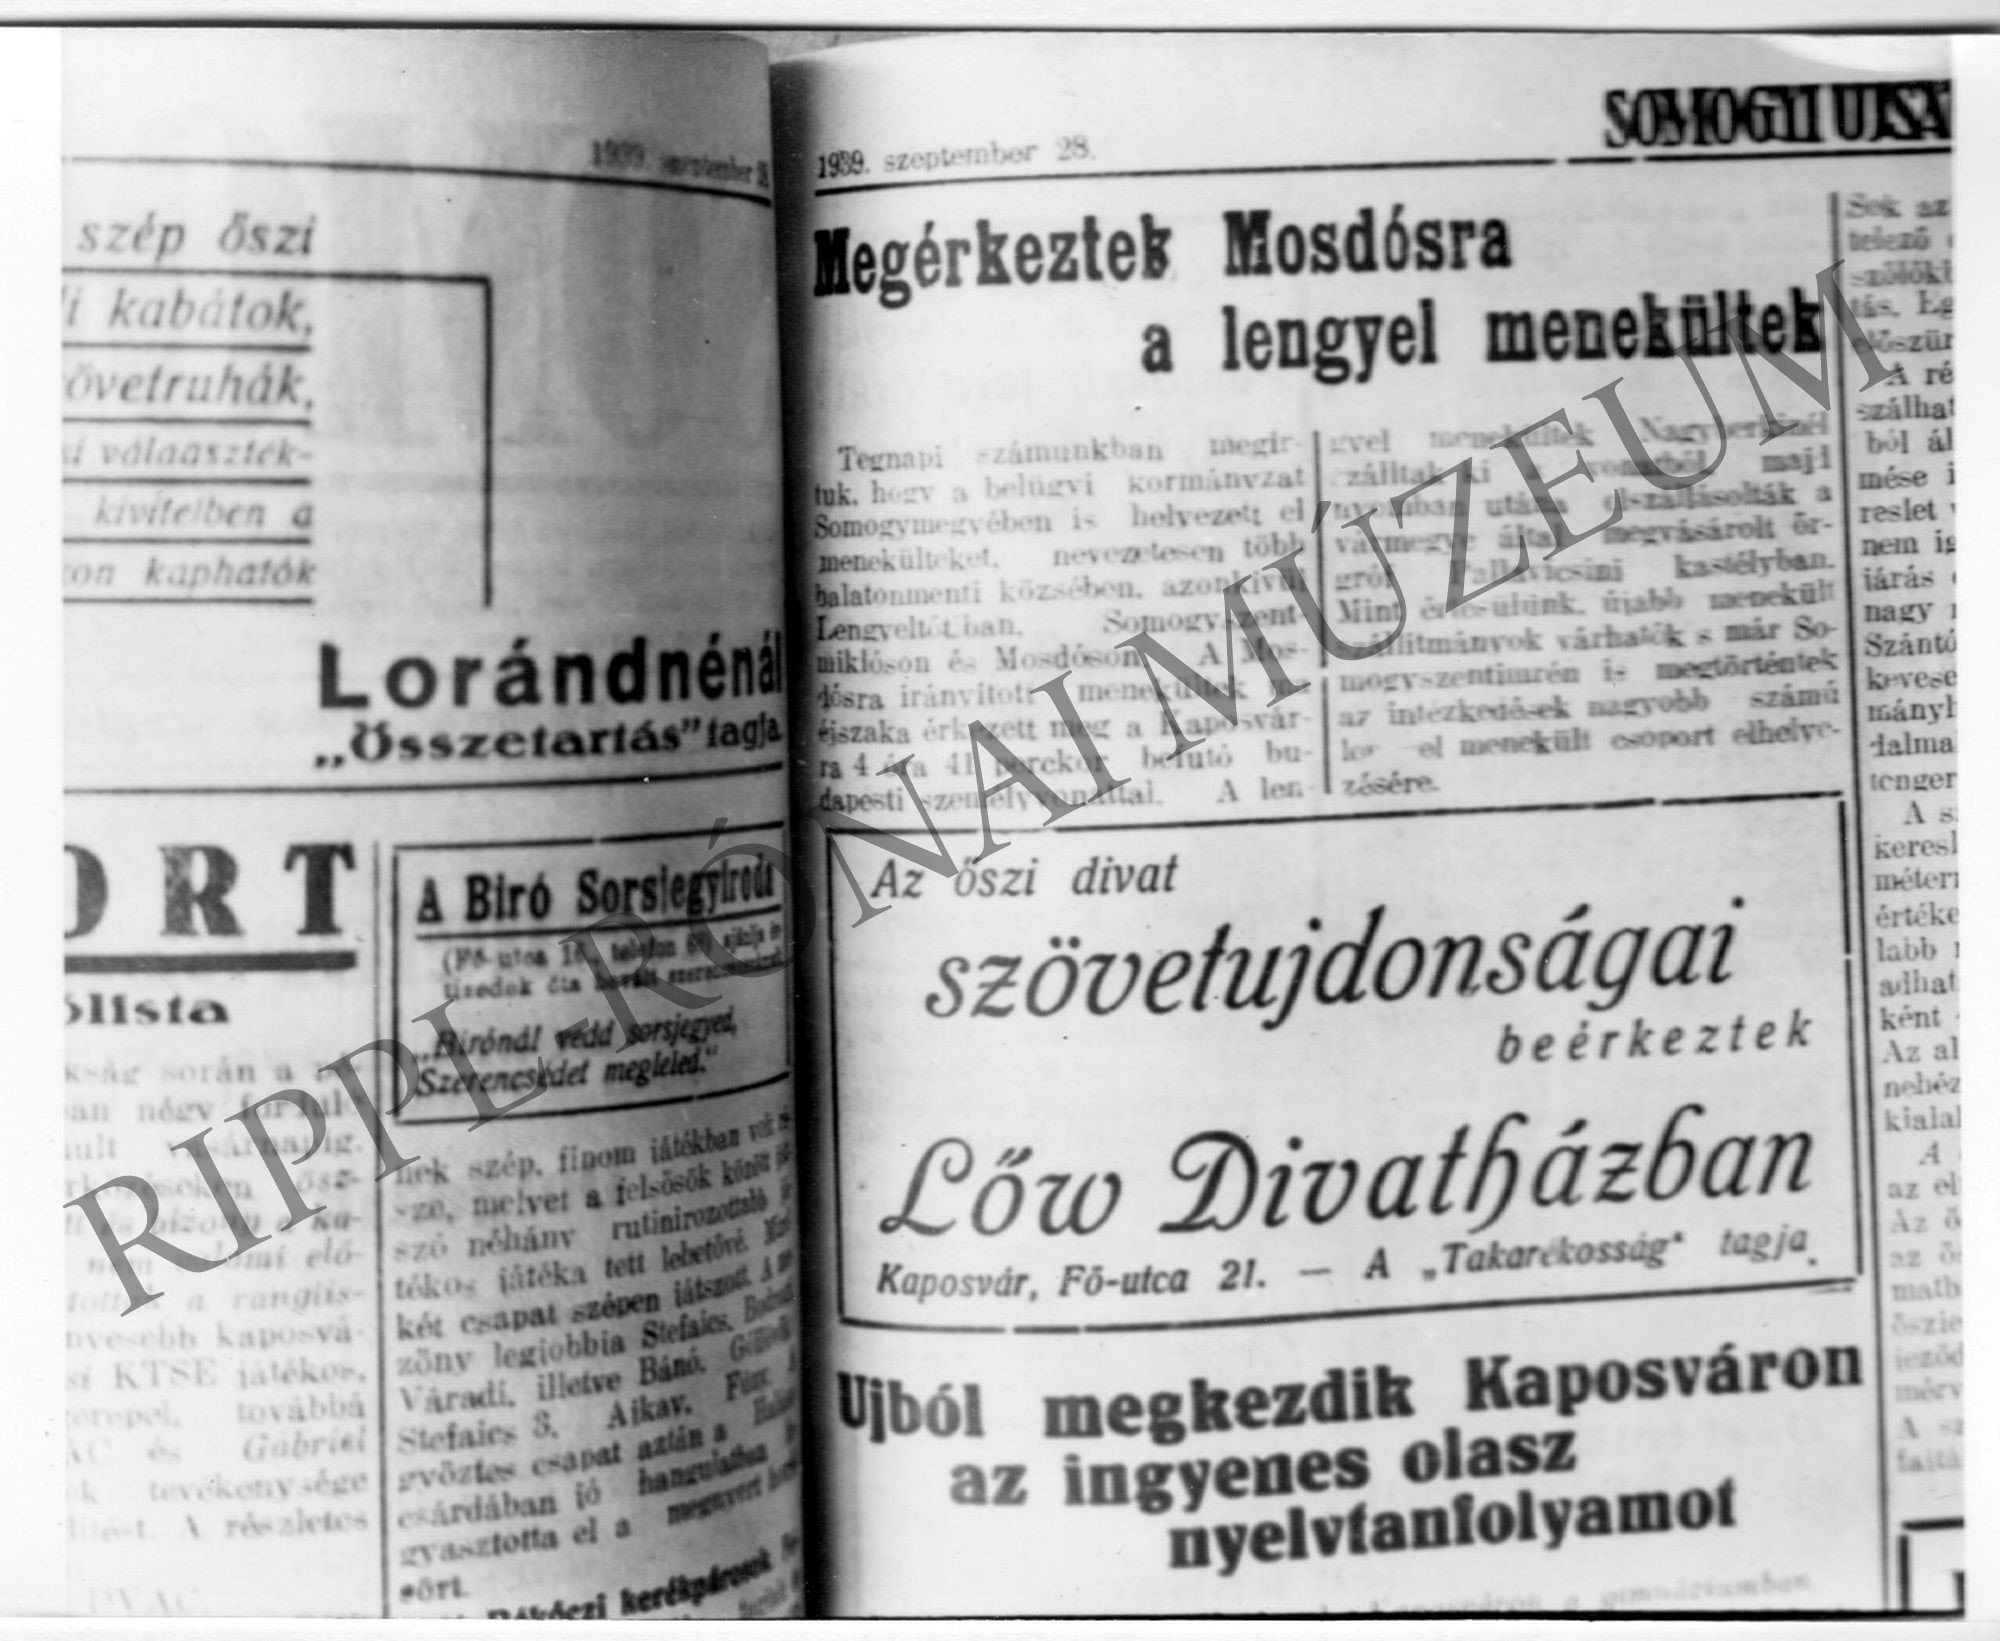 Újságcikk - Somogyi Ujság 1939. szeptember 28. "Megérkeztek Mosdósra a lengyel menekültek" (Rippl-Rónai Múzeum CC BY-NC-SA)